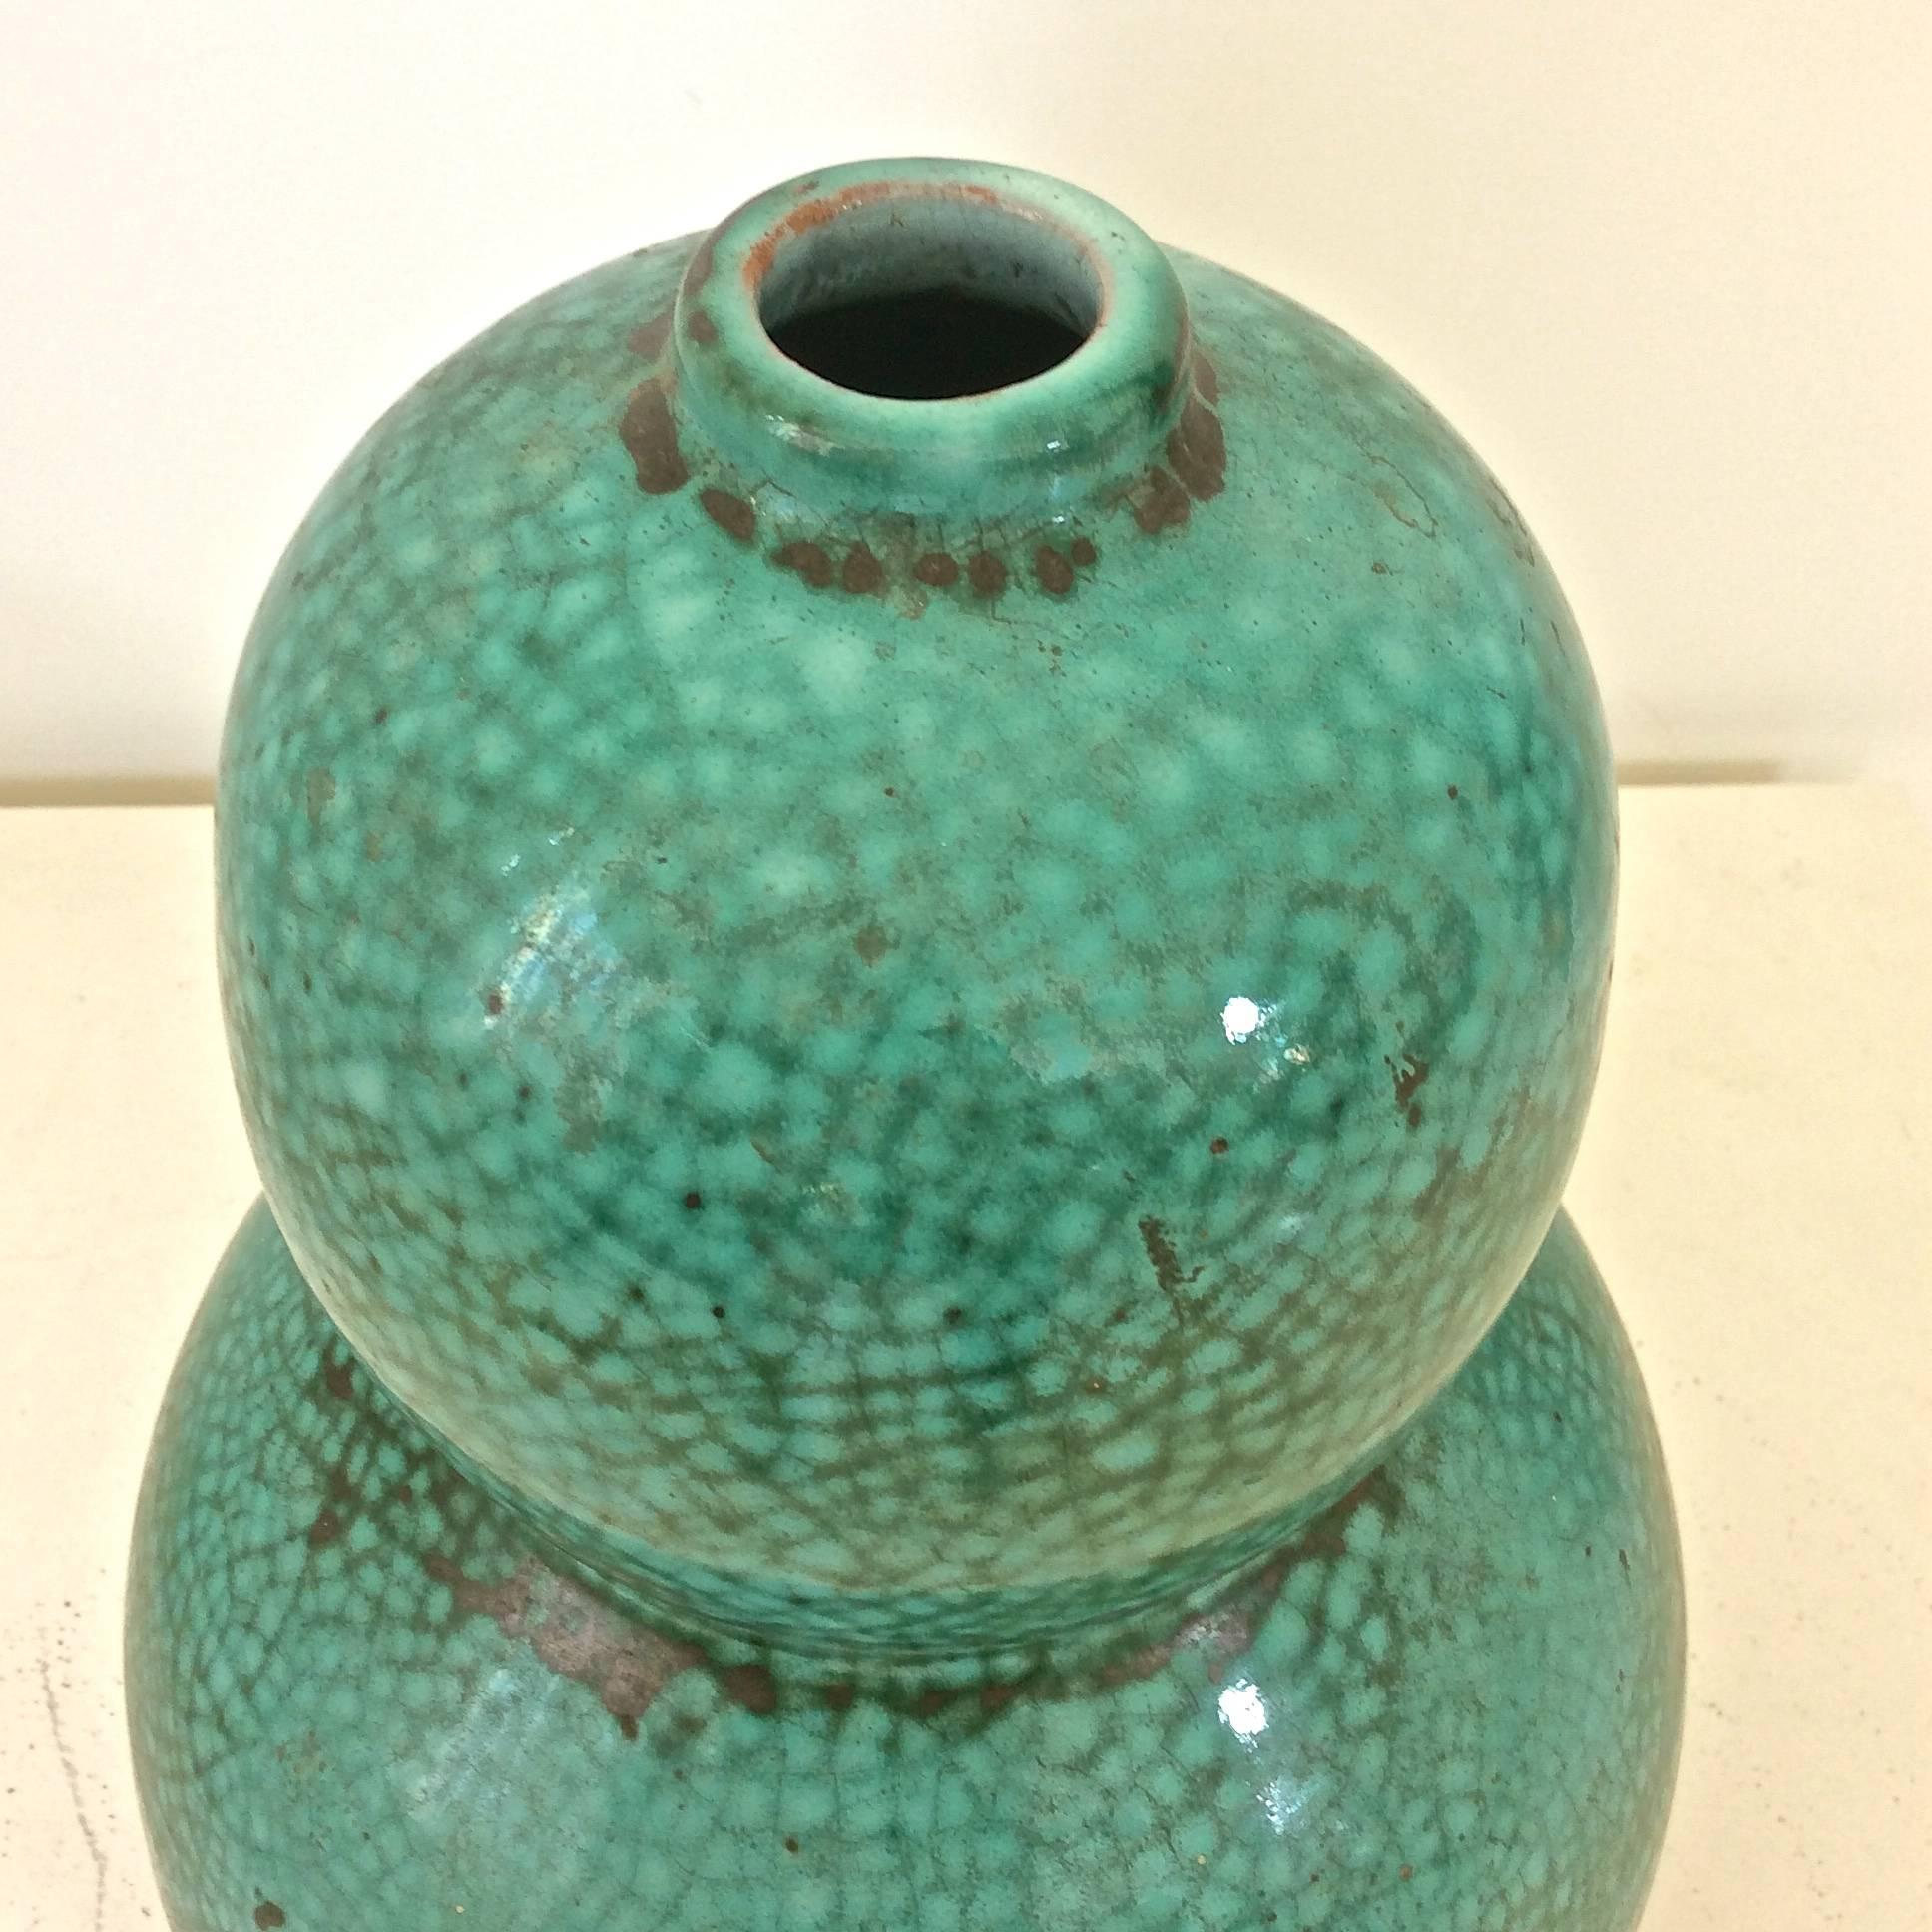 Nice Art Deco primavera vase, circa 1930, France.
Green craquelure glazed ceramic.
Dimensions: Height 29 cm, diameter 21 cm.
Signed and numbered.
Good original condition.